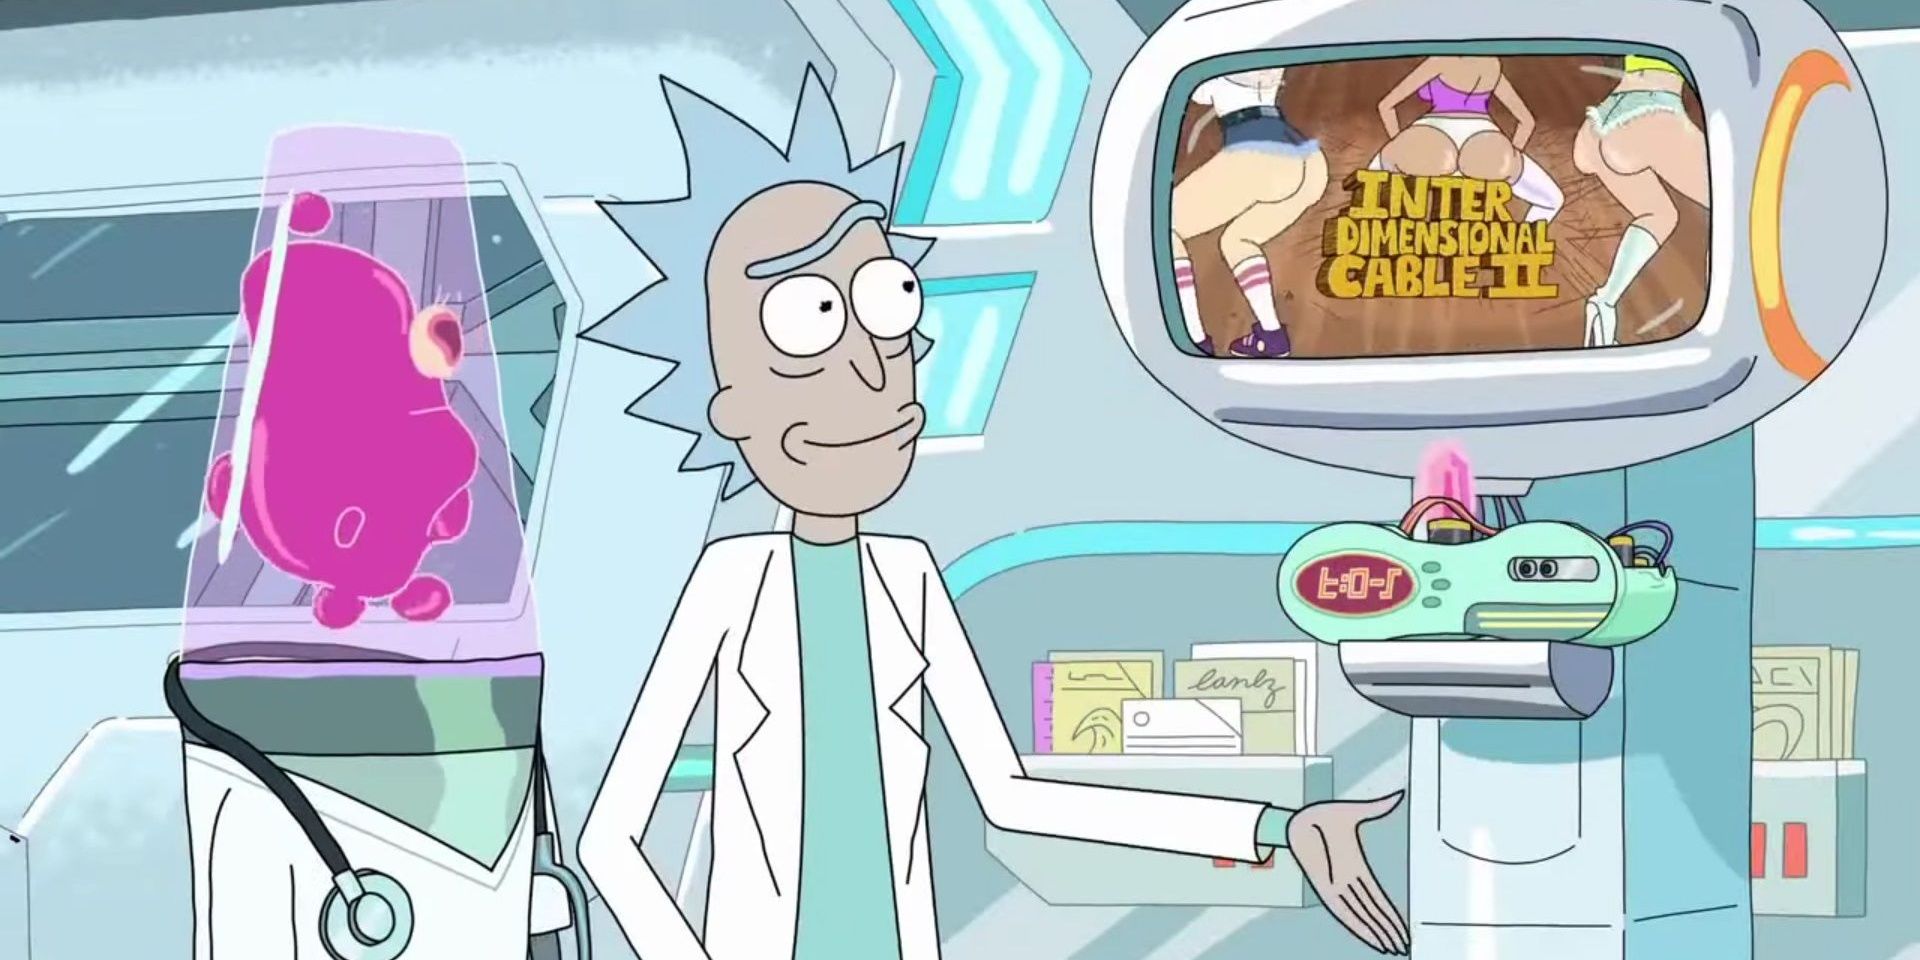 Rick schaut während Rick and Morty Interdimensional Cable 2 in einem Alien-Krankenhaus fern